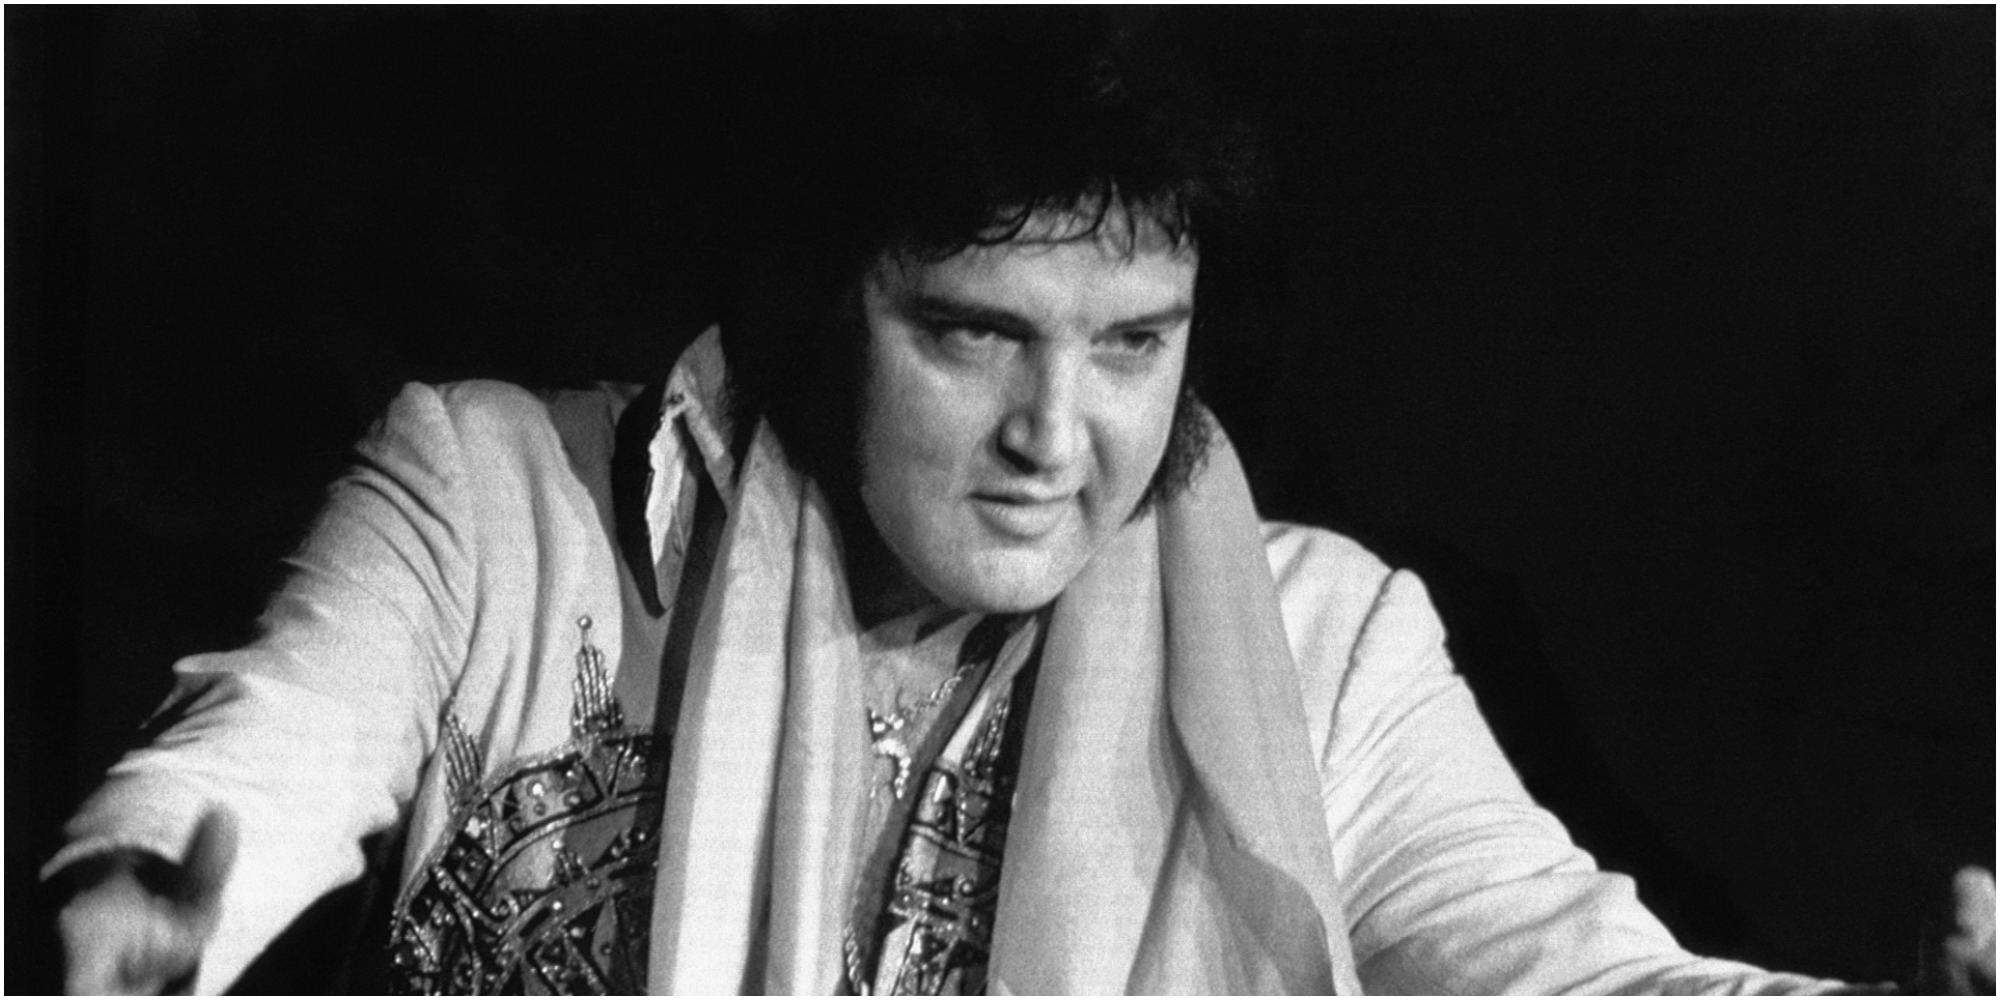 Elvis Presley during a June 1977 concert appearance.